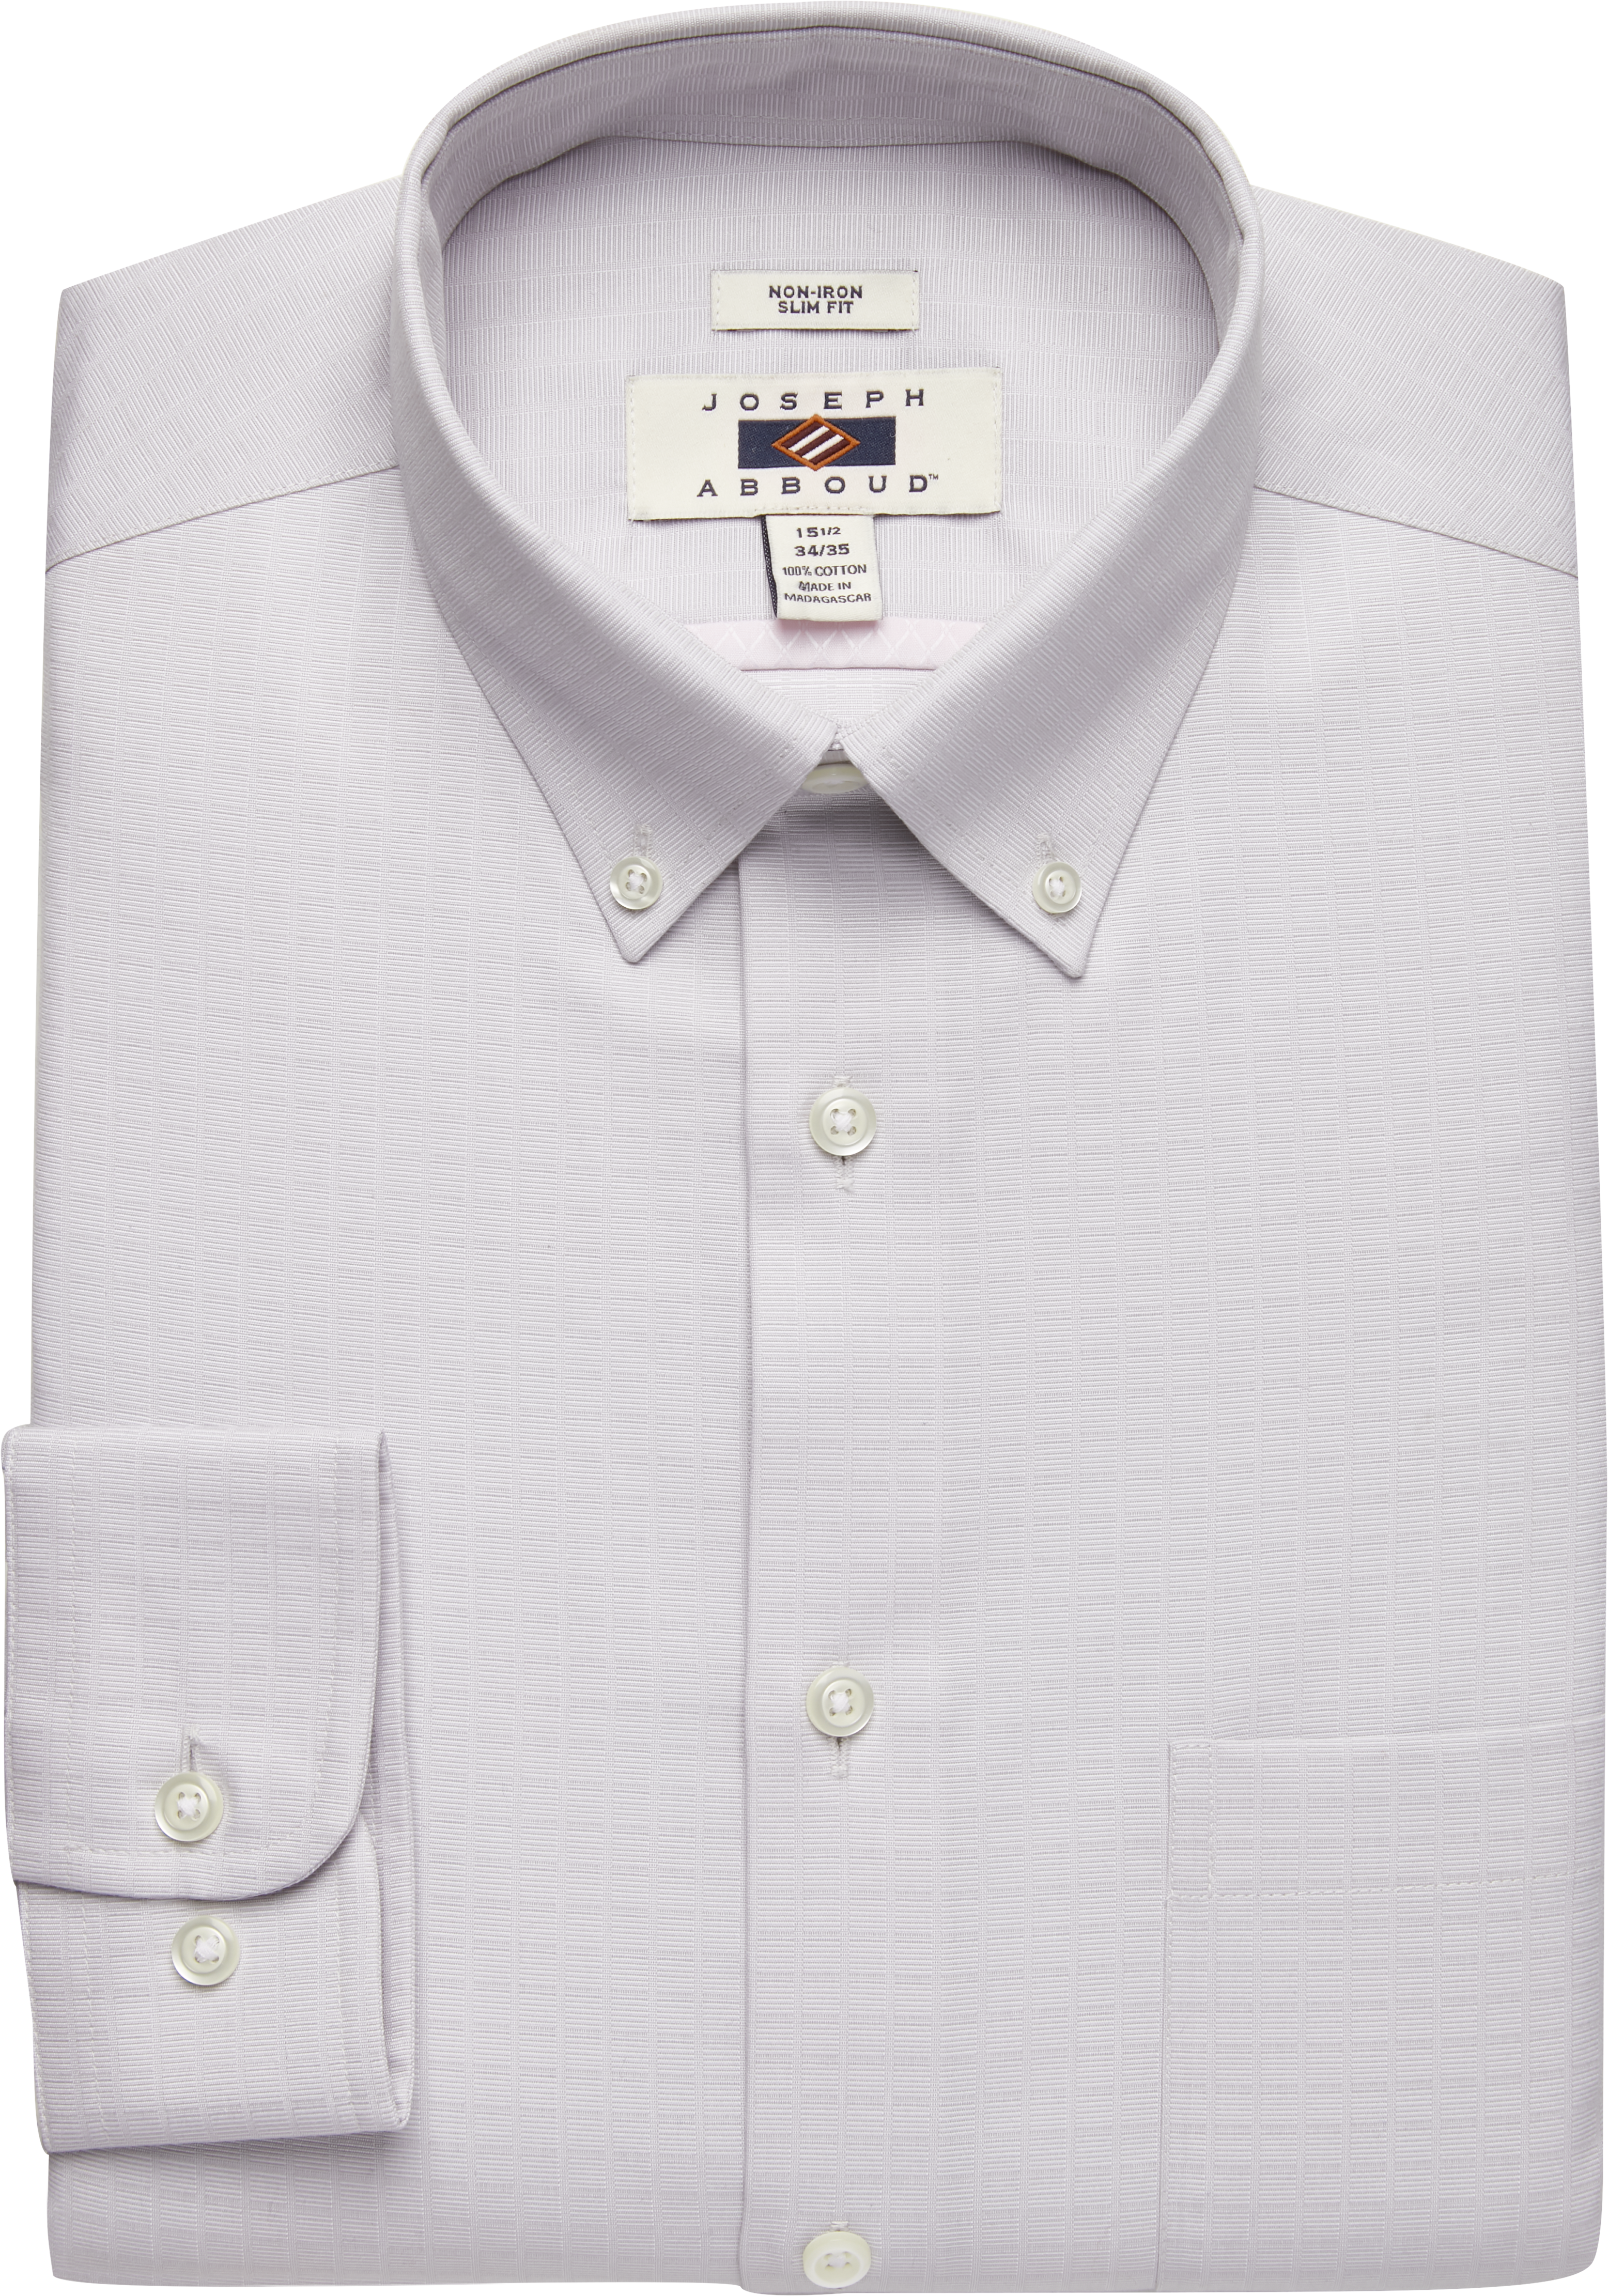 Joseph Abboud Gray Check Slim Fit Dress Shirt - Men's Sale | Men's ...